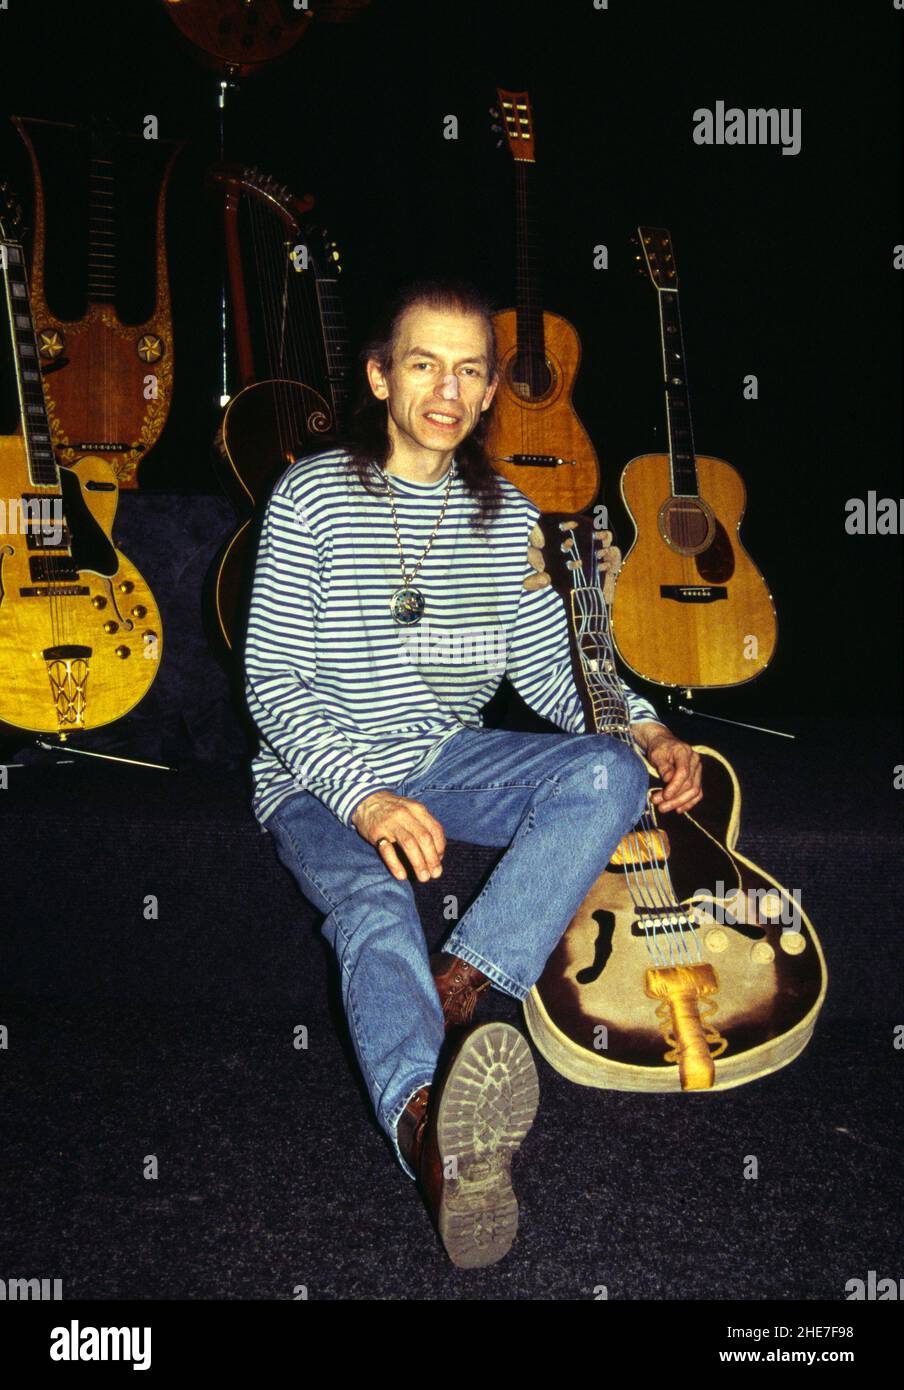 Le guitariste anglais Steve Howe avec une partie de sa collection de guitares, Londres, 1995.Celui qu'il tient est en fait une guitare 'câly toy'. Banque D'Images